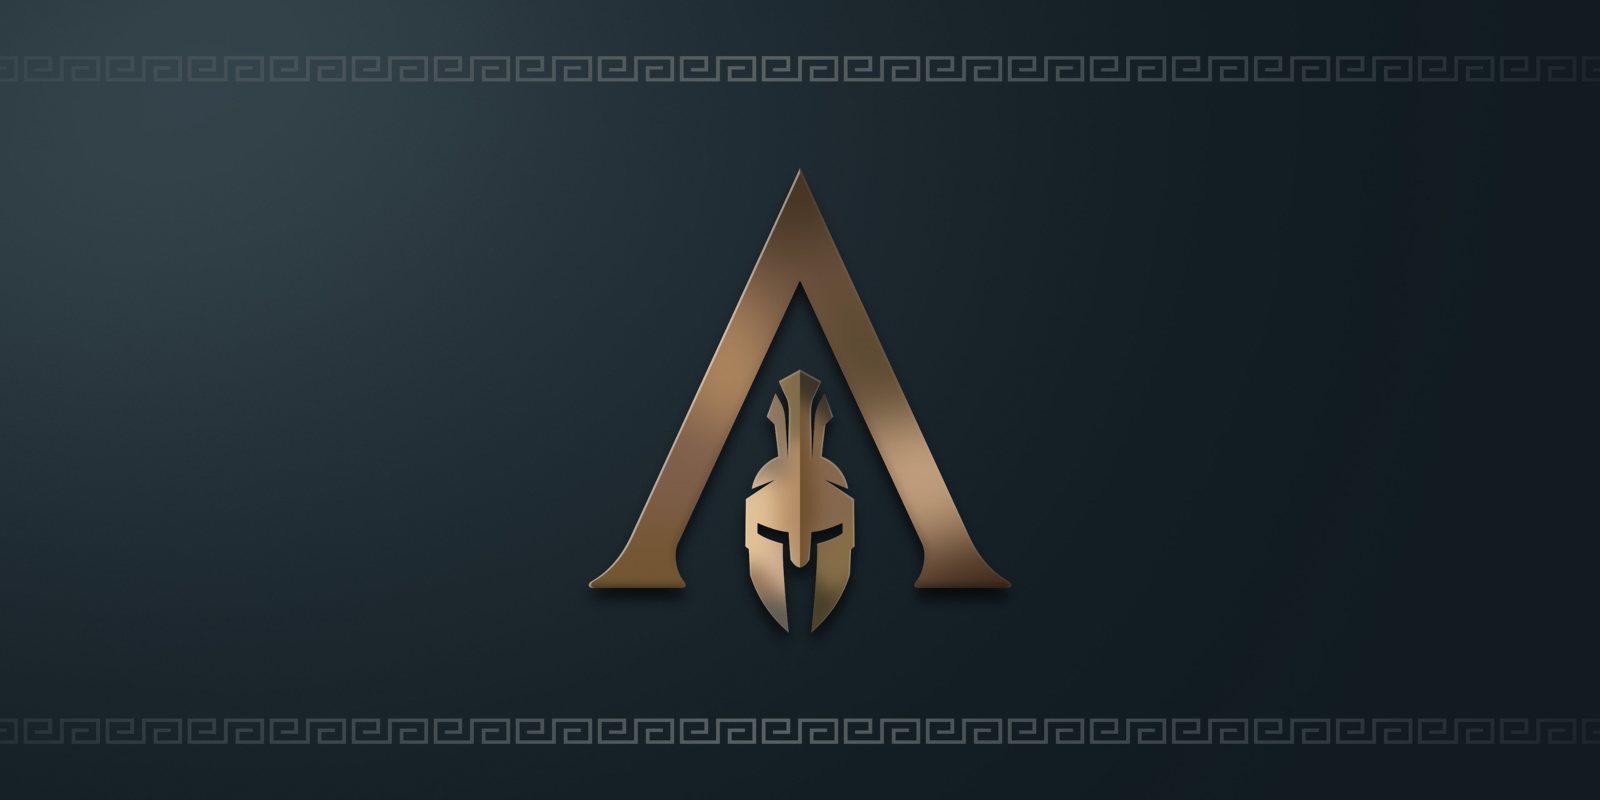 Ubisoft anuncia 'Assassin's Creed Odyssey' ambientado en Grecia; se presentará en el E3